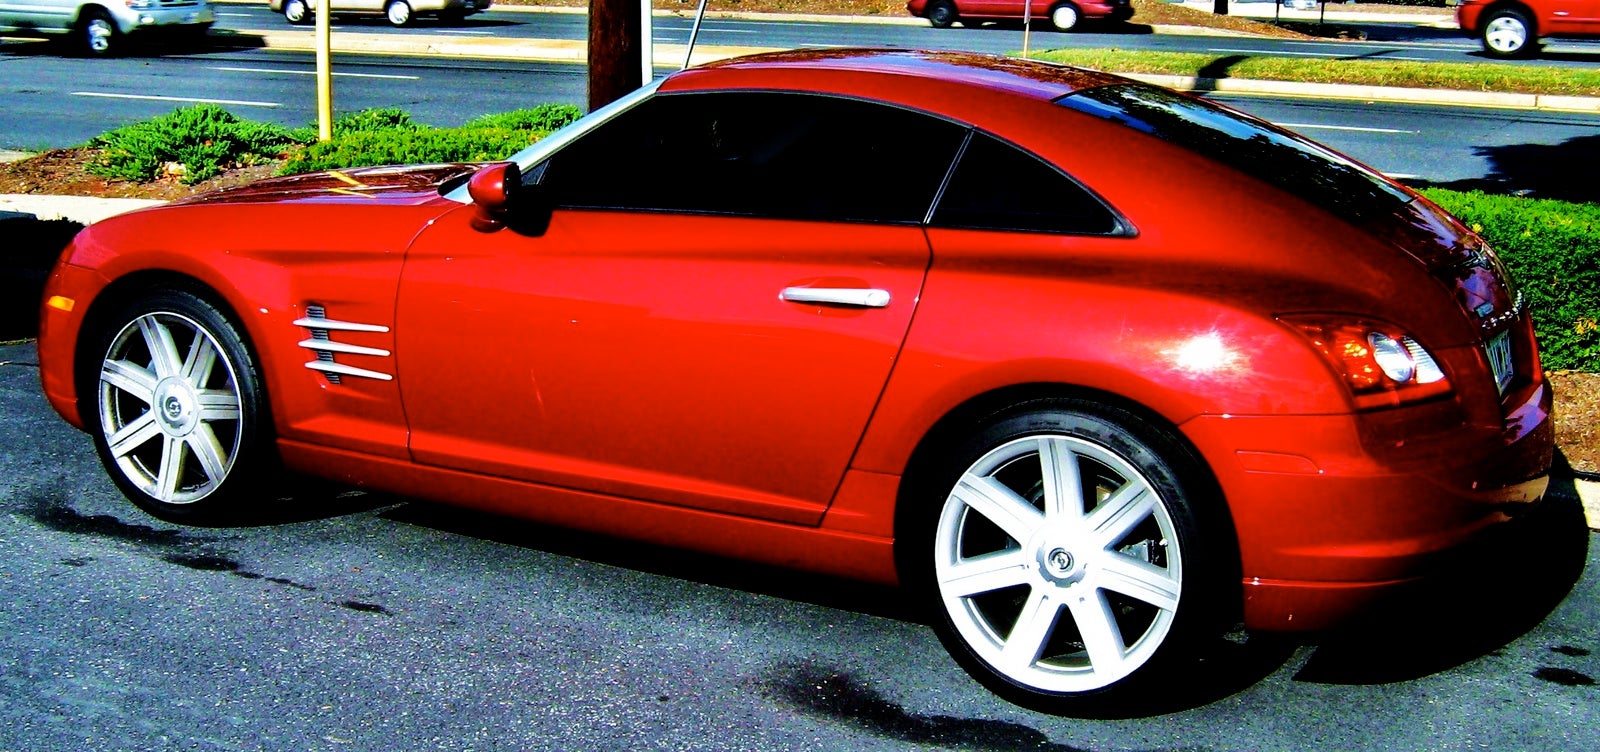 2005 Chrysler crossfire srt-6 coupe specs #2